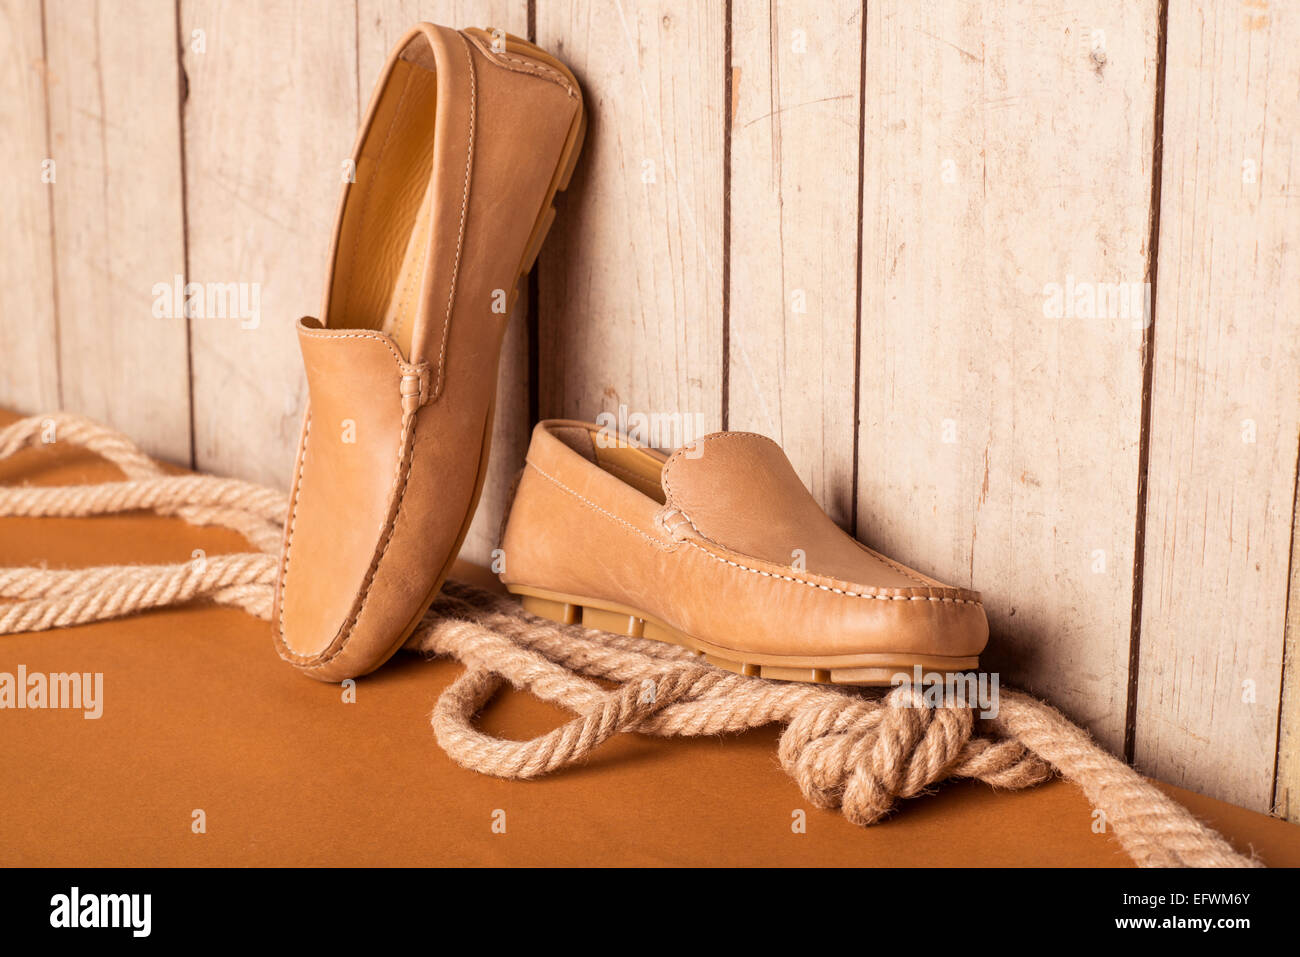 Loafer Herrenschuh auf alten hölzernen Hintergrund Stockfoto